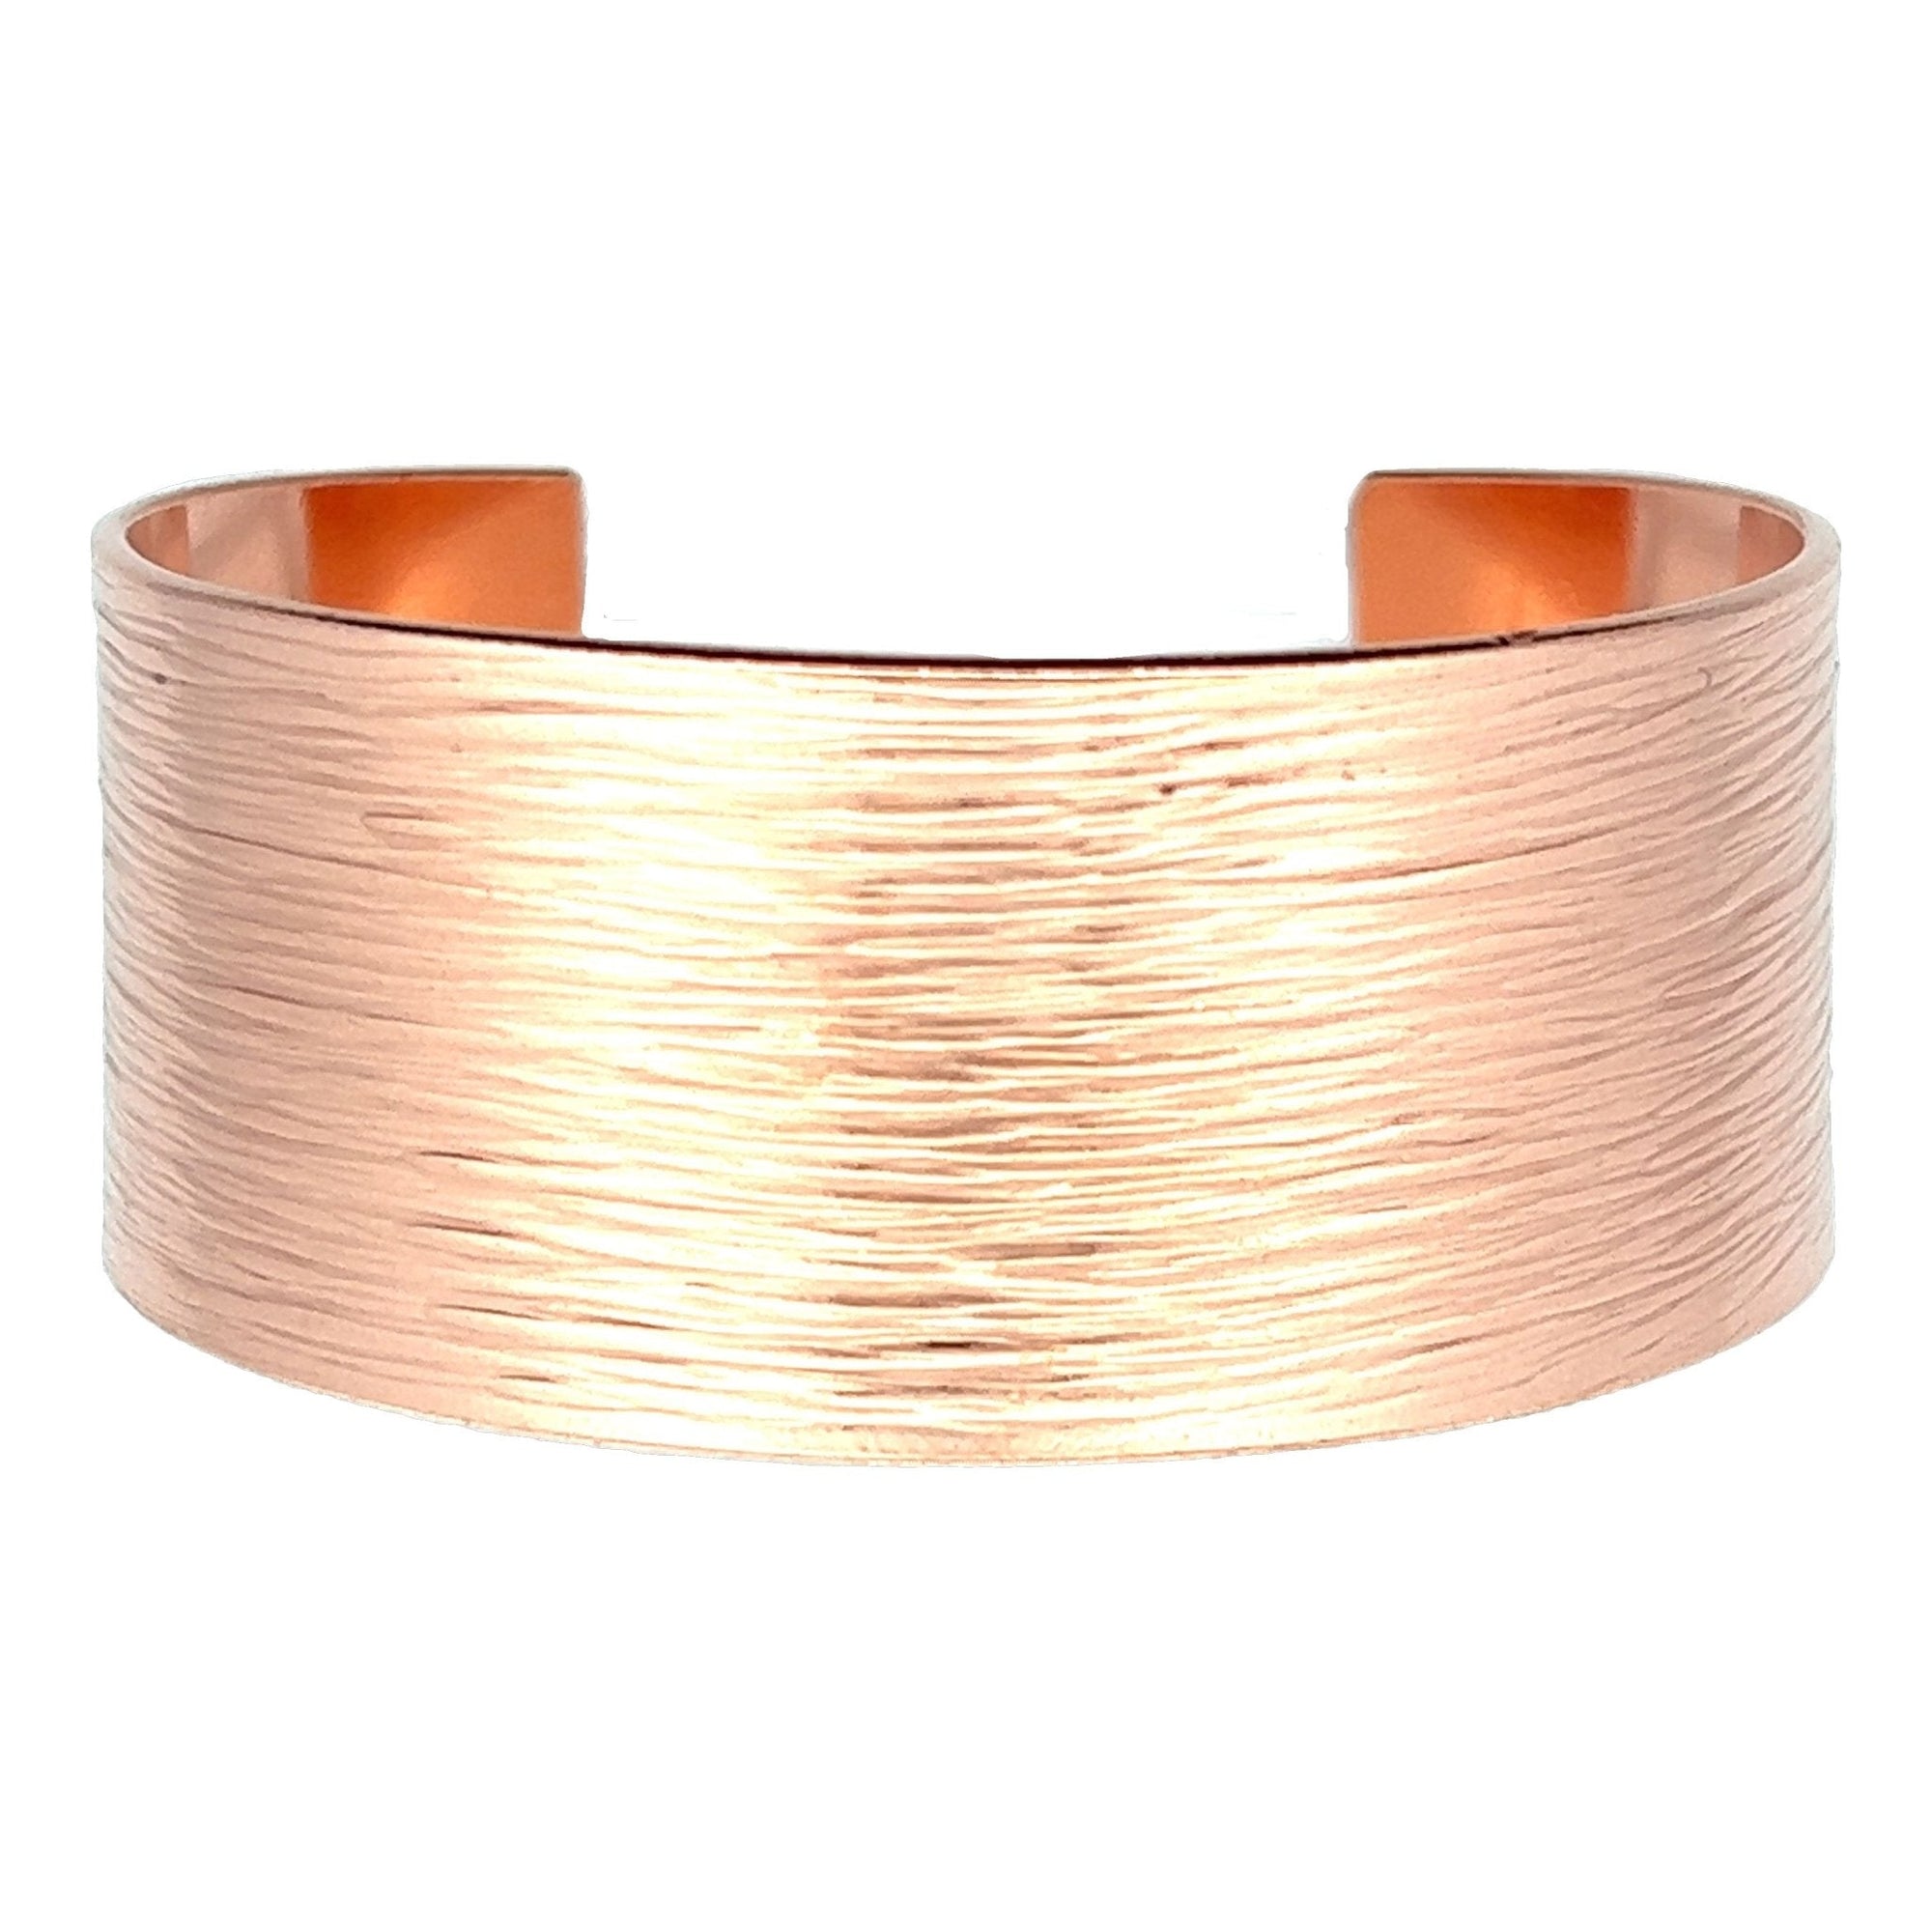 1 Inch Wide Bark Copper Cuff Bracelet - Close Up Detail